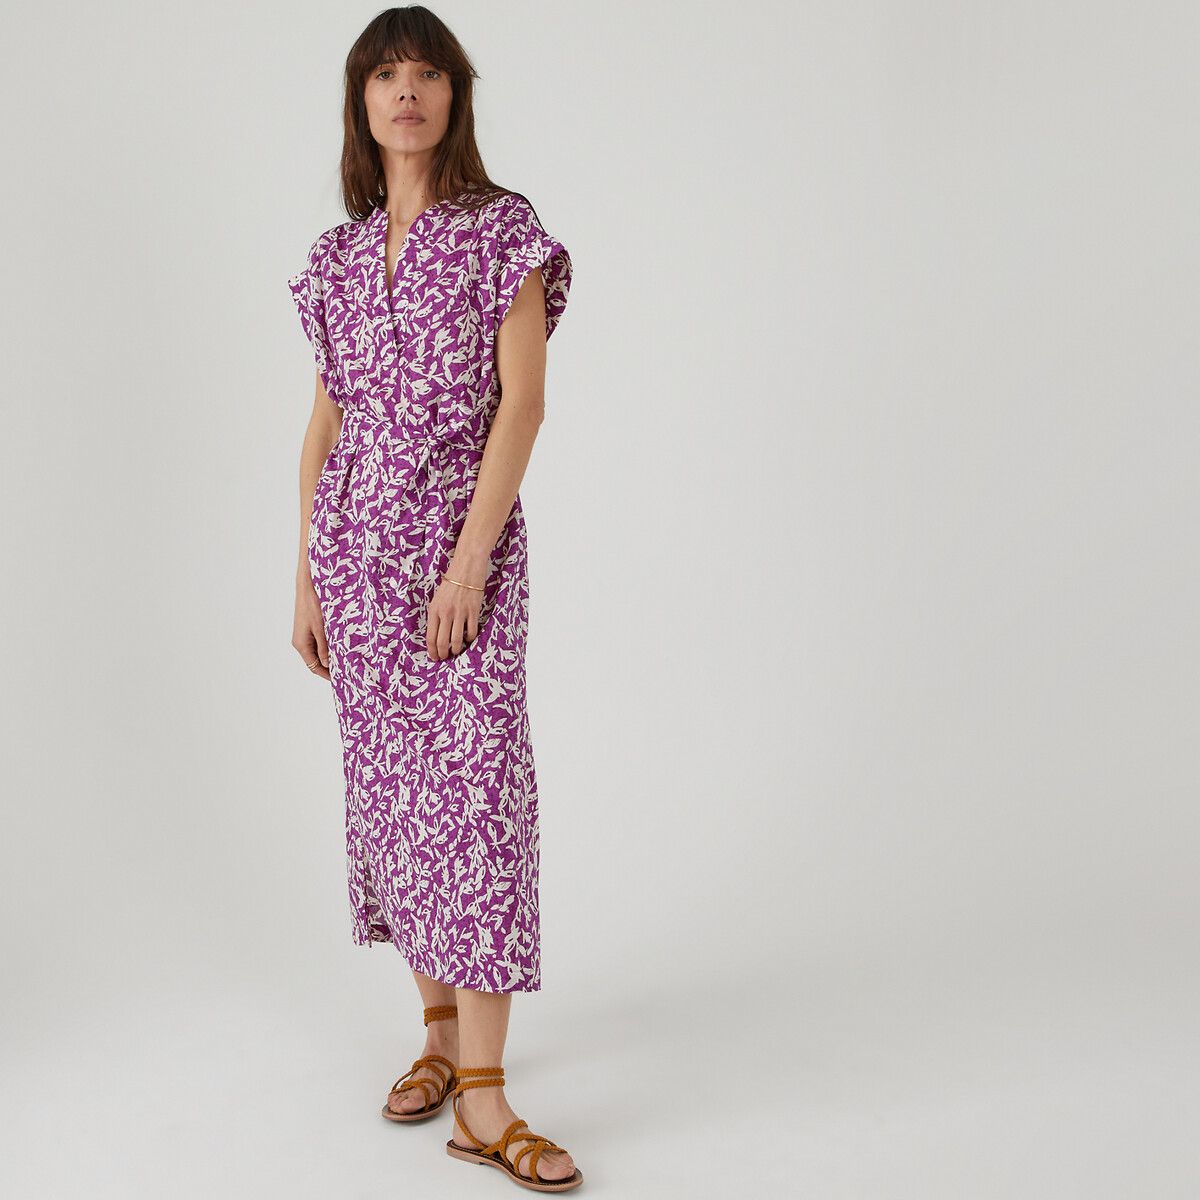 Платье длинное с воротником-стойкой из хлопка с цветочным принтом S фиолетовый платье длинное из шелка с принтом witty 44 фиолетовый